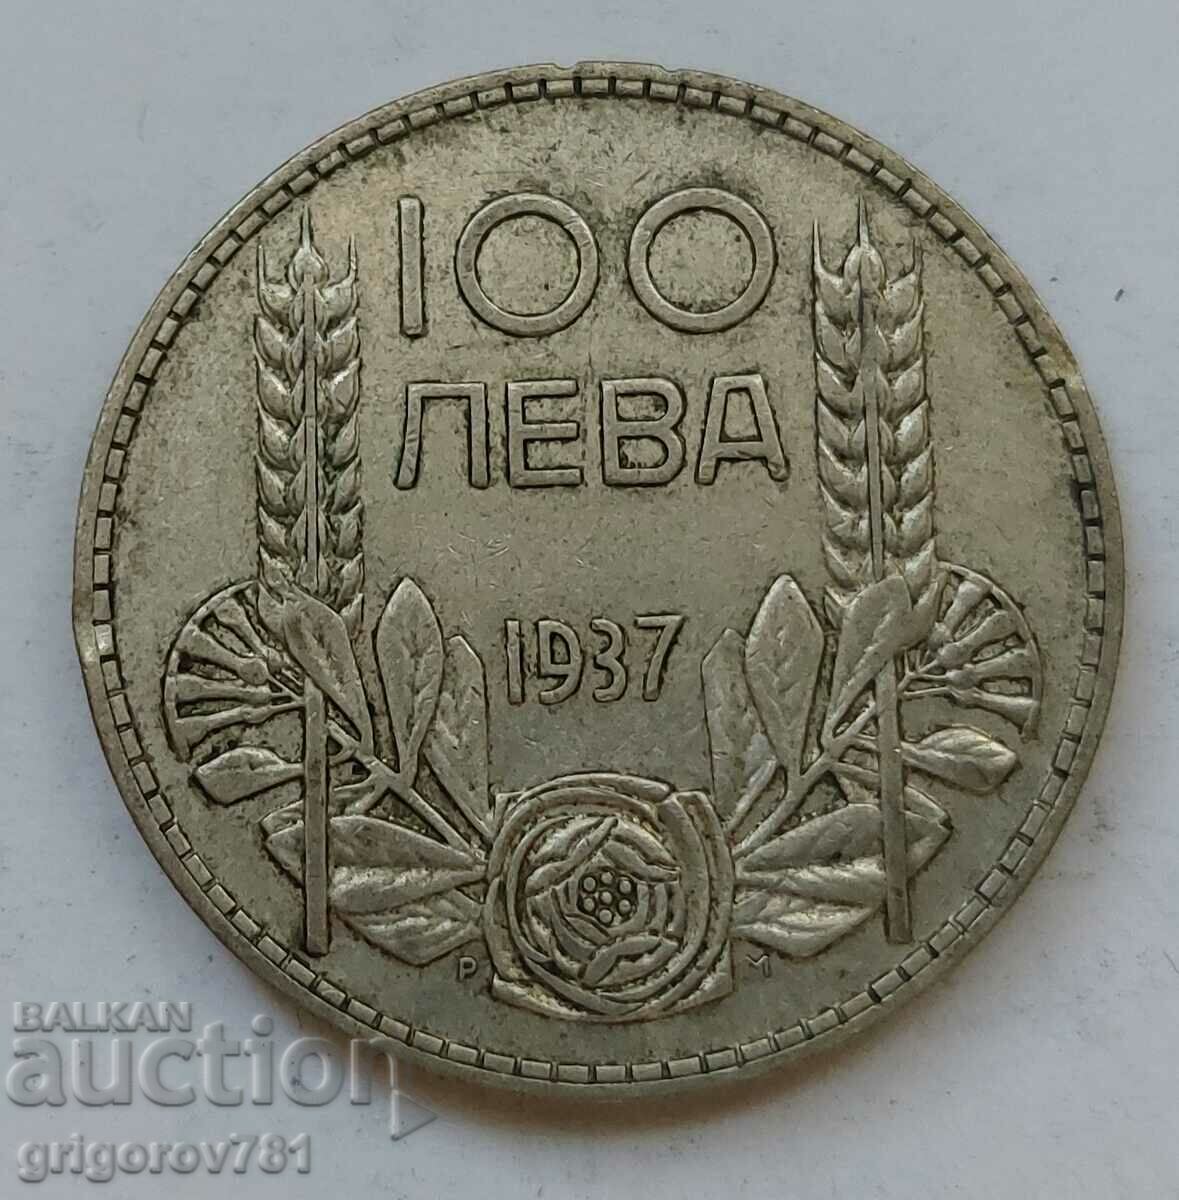 100 leva argint Bulgaria 1937 - monedă de argint #144